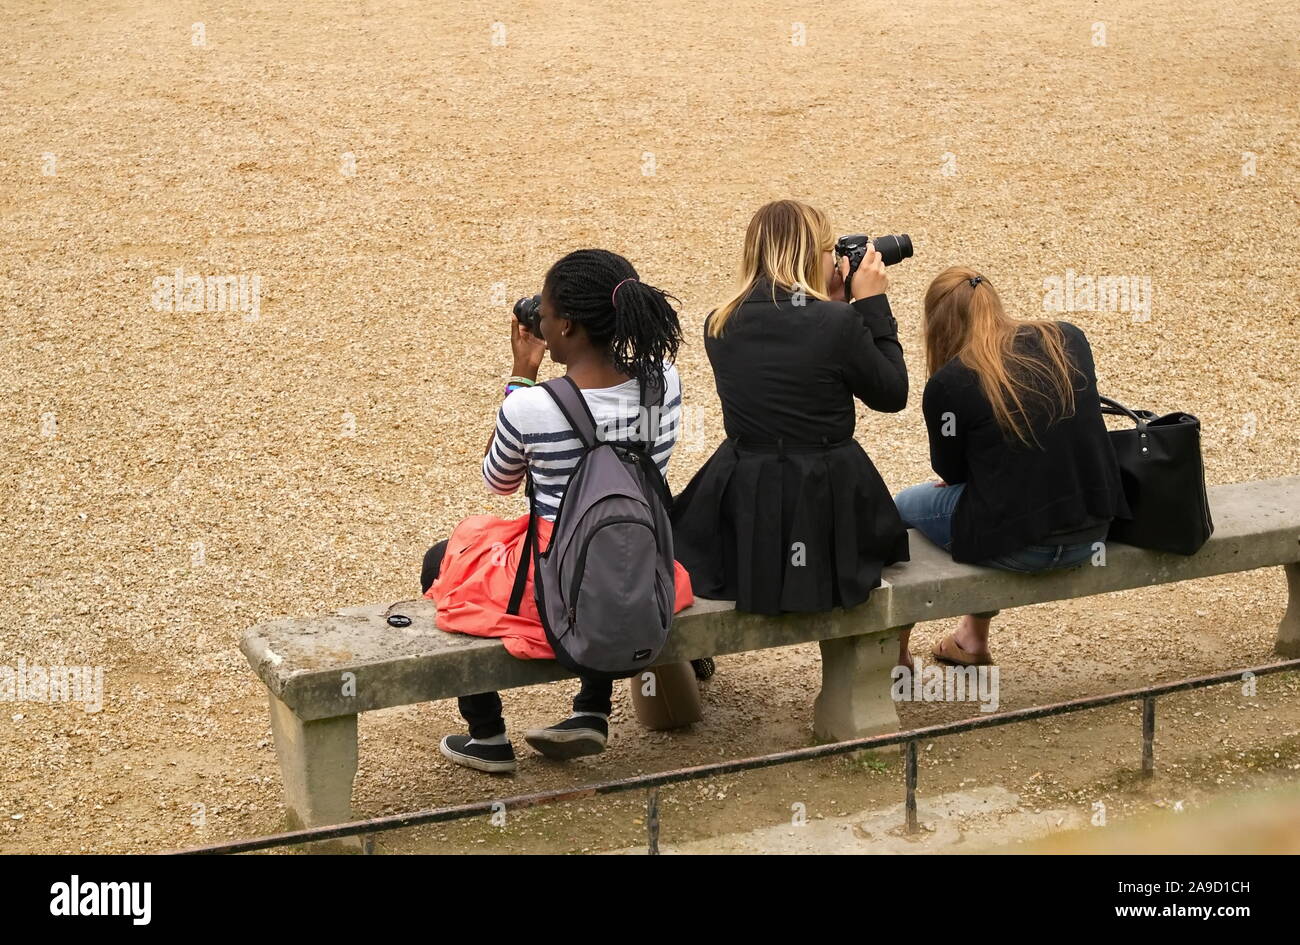 Paris, Ile de France / France - 20 juin 2016 : trois touristes s'asseoir sur un banc de parc et de prendre des photos à l'aide de caméras numériques Banque D'Images